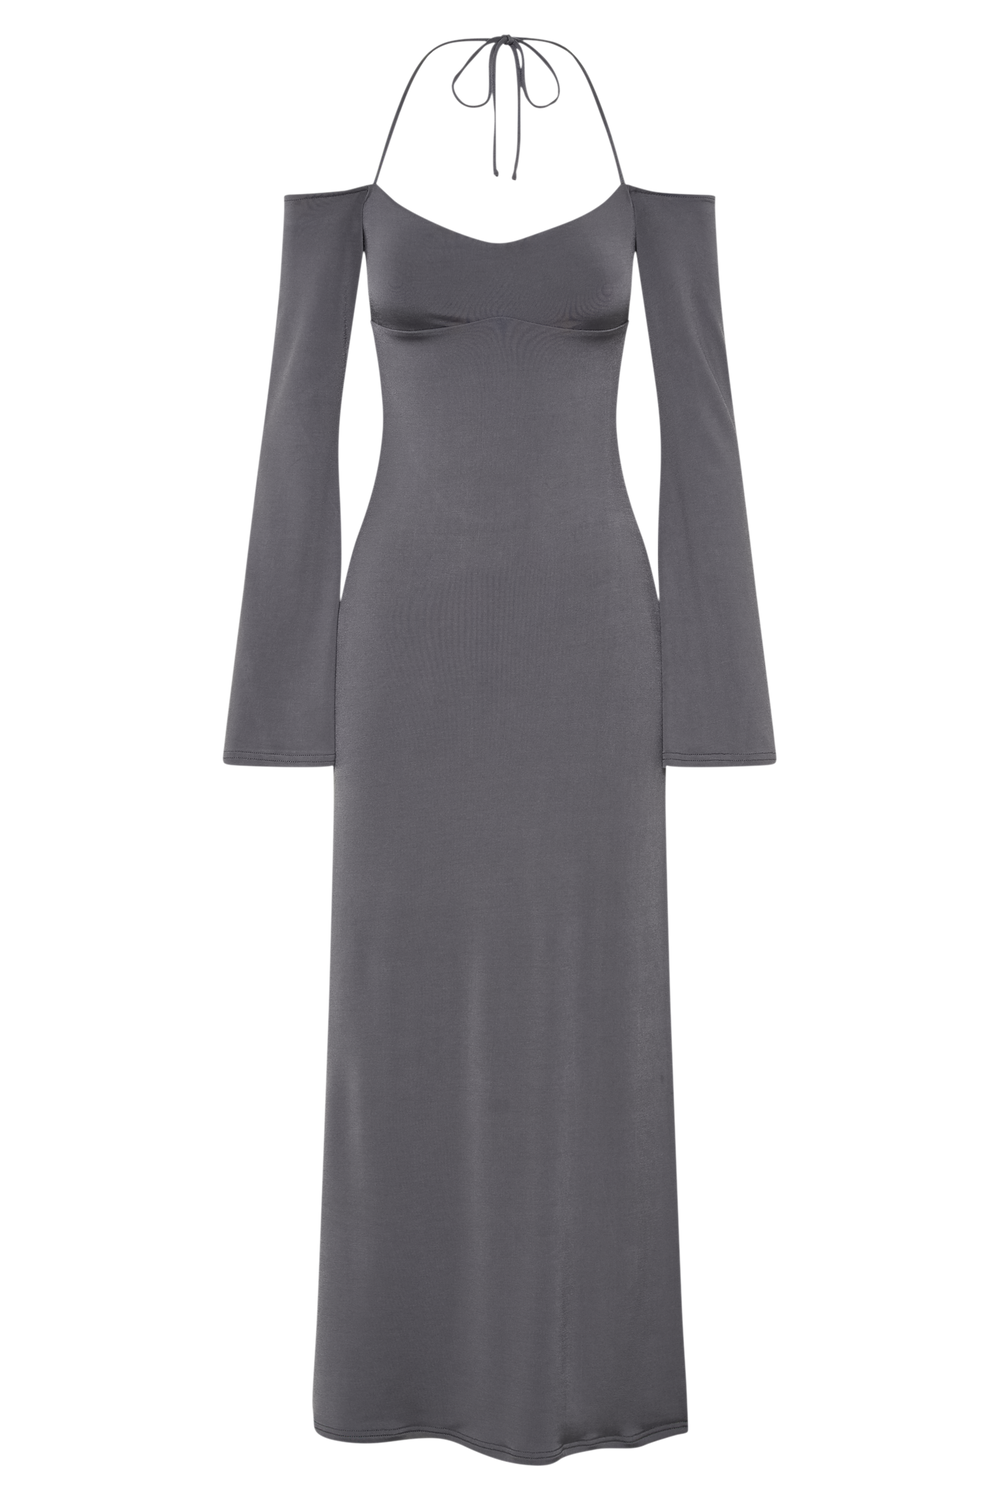 Tia Slinky Off Shoulder Maxi Dress - Charcoal